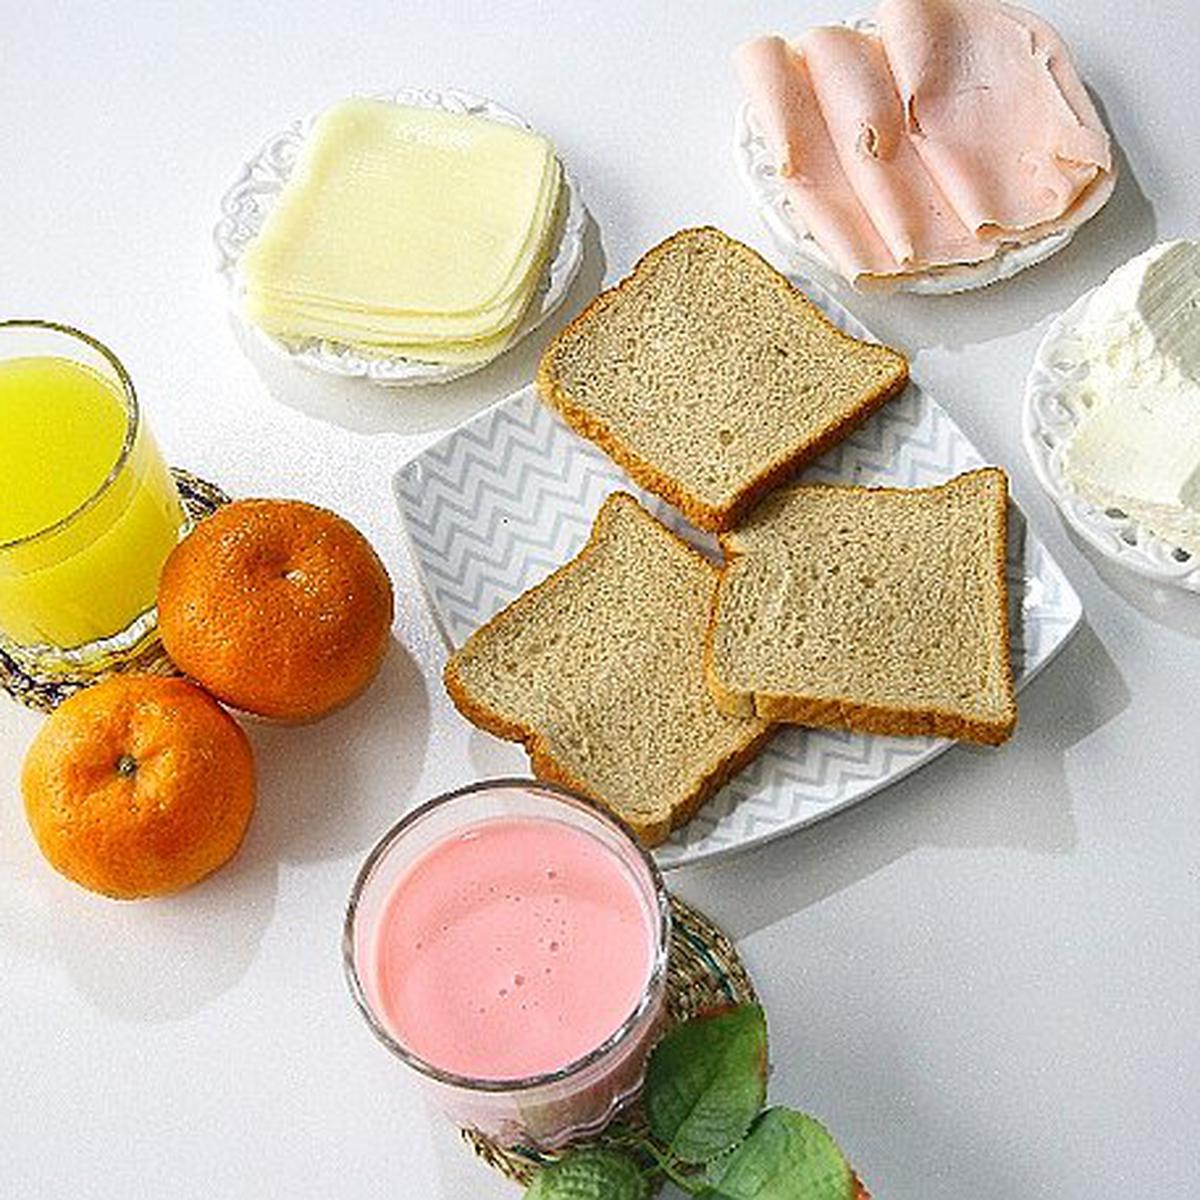 3 desayunos saludables que puedes preparar en menos de 5 minutos | CIUDAD |  OJO